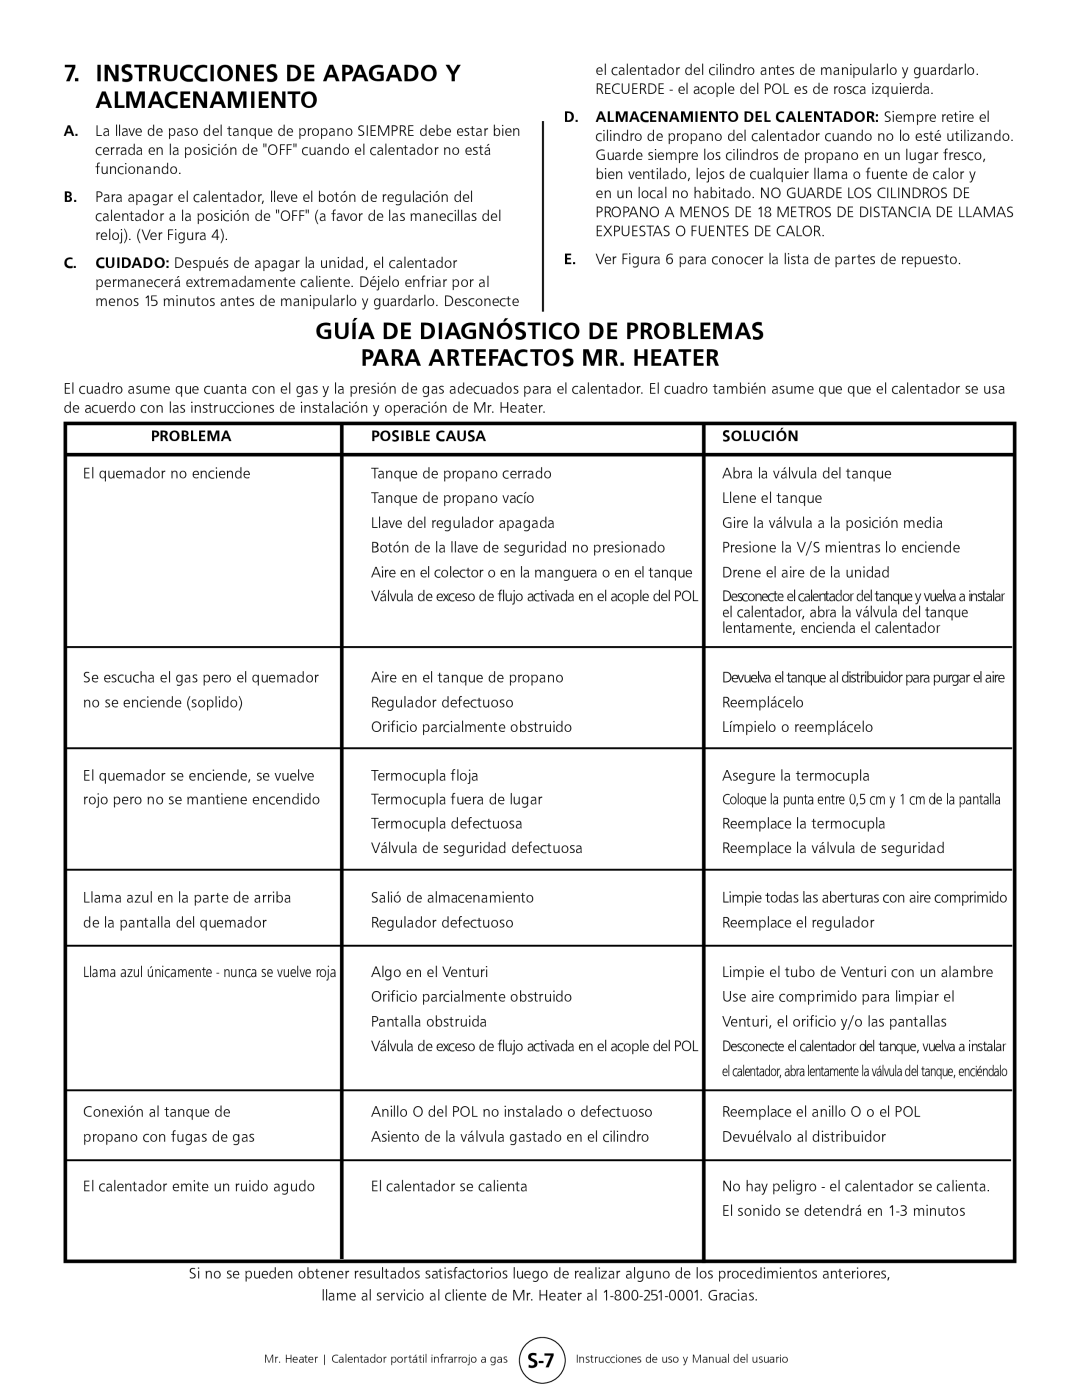 Mr. Heater MH45T Guía De Diagnóstico De Problemas, Para Artefactos Mr. Heater, Instrucciones De Apagado Y Almacenamiento 